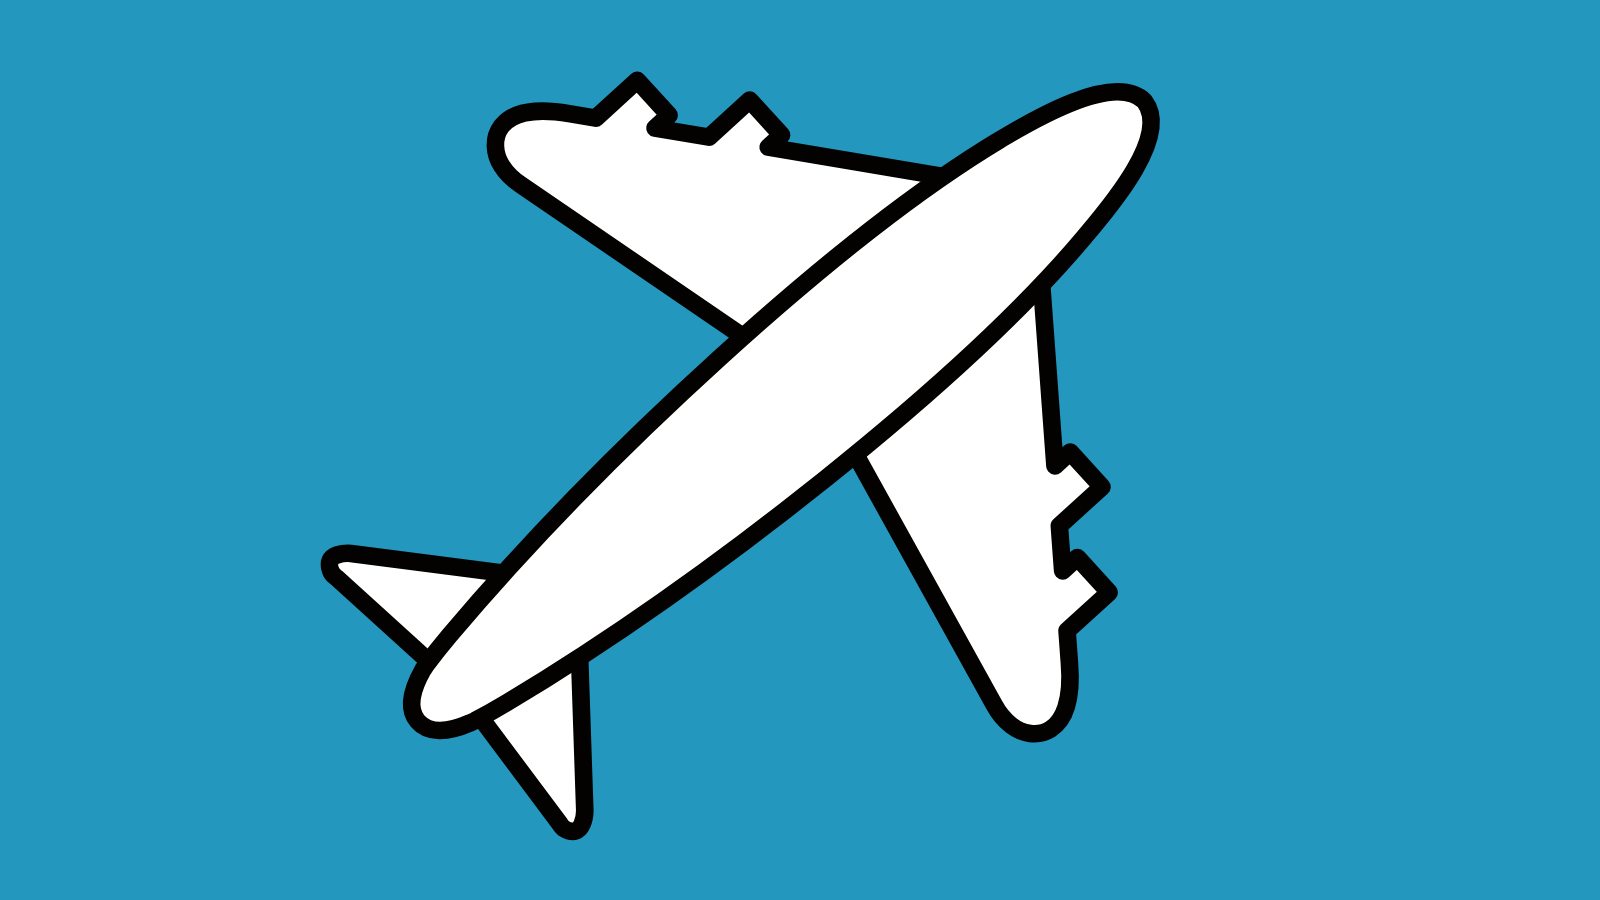 A white airplane icon